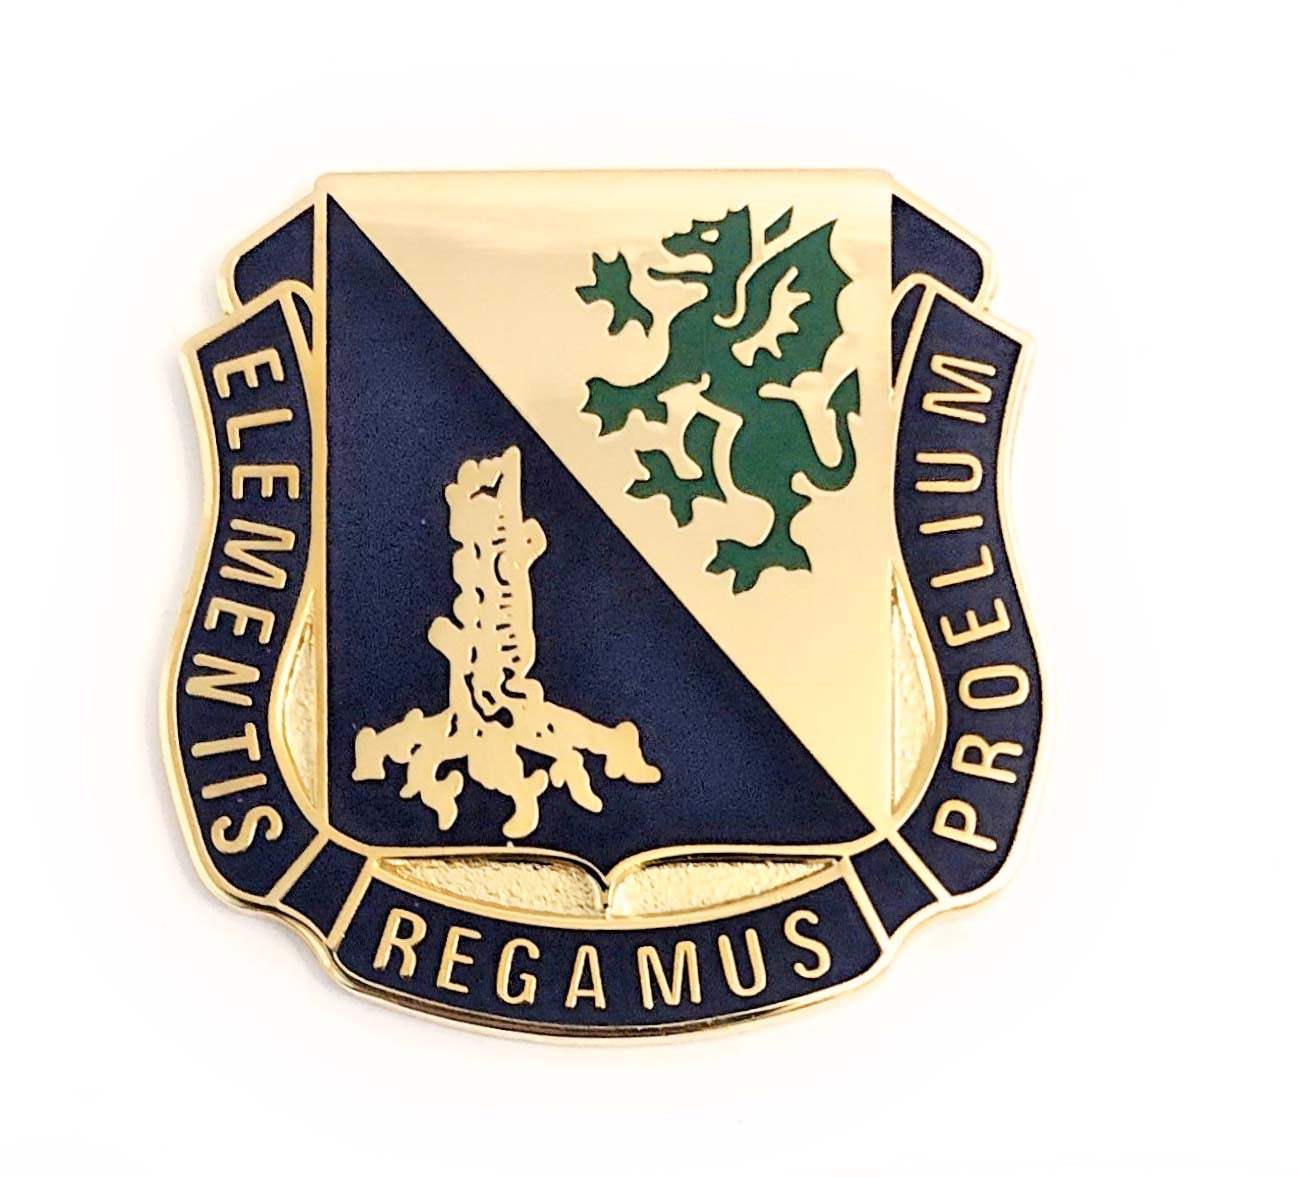 U.S. Army Chemical Regimental Crest "Elementis Regamus Proelium" (each)